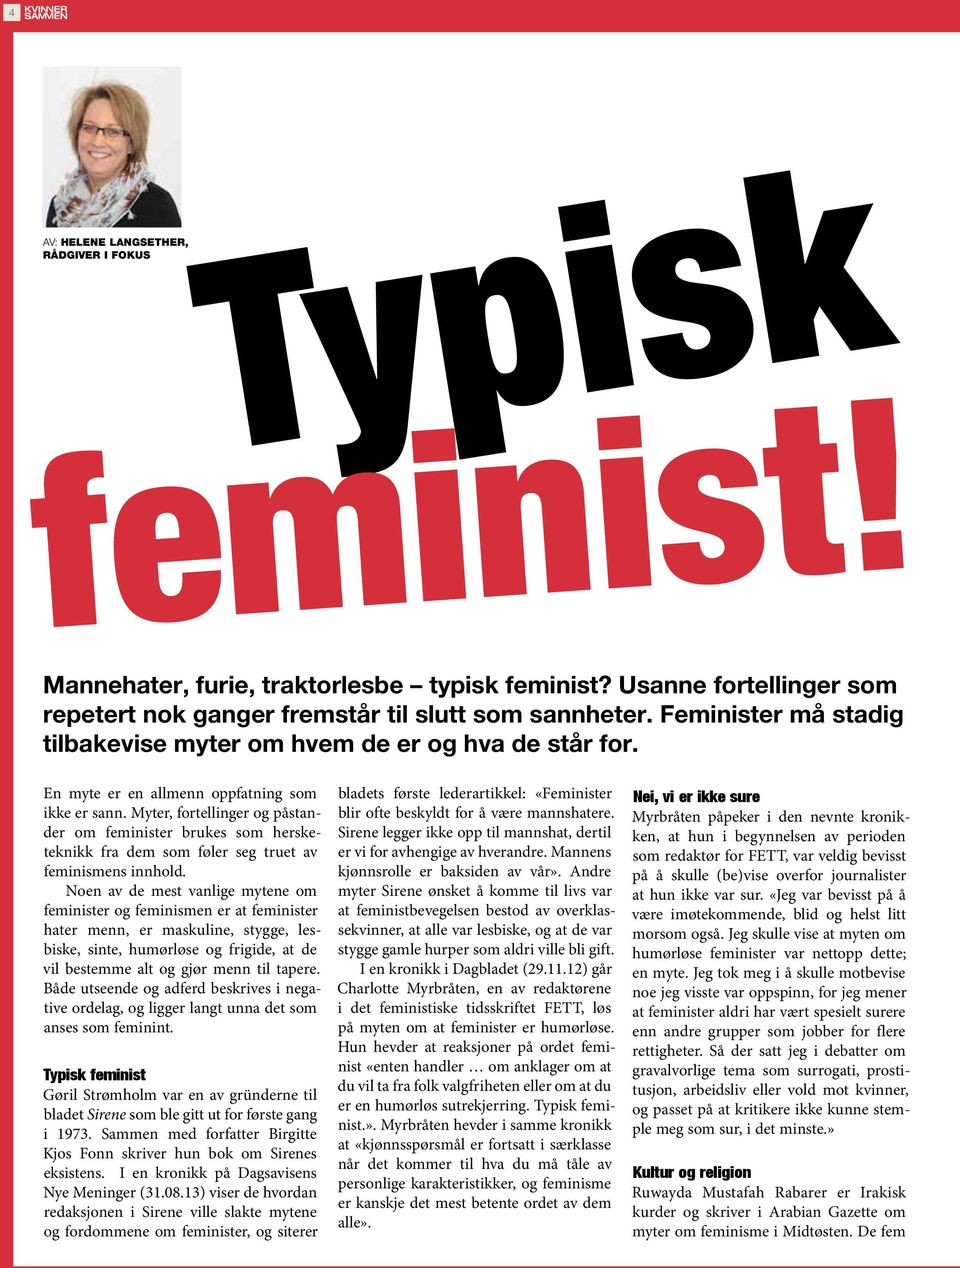 Myter, fortellinger og påstander om feminister brukes som hersketeknikk fra dem som føler seg truet av feminismens innhold.